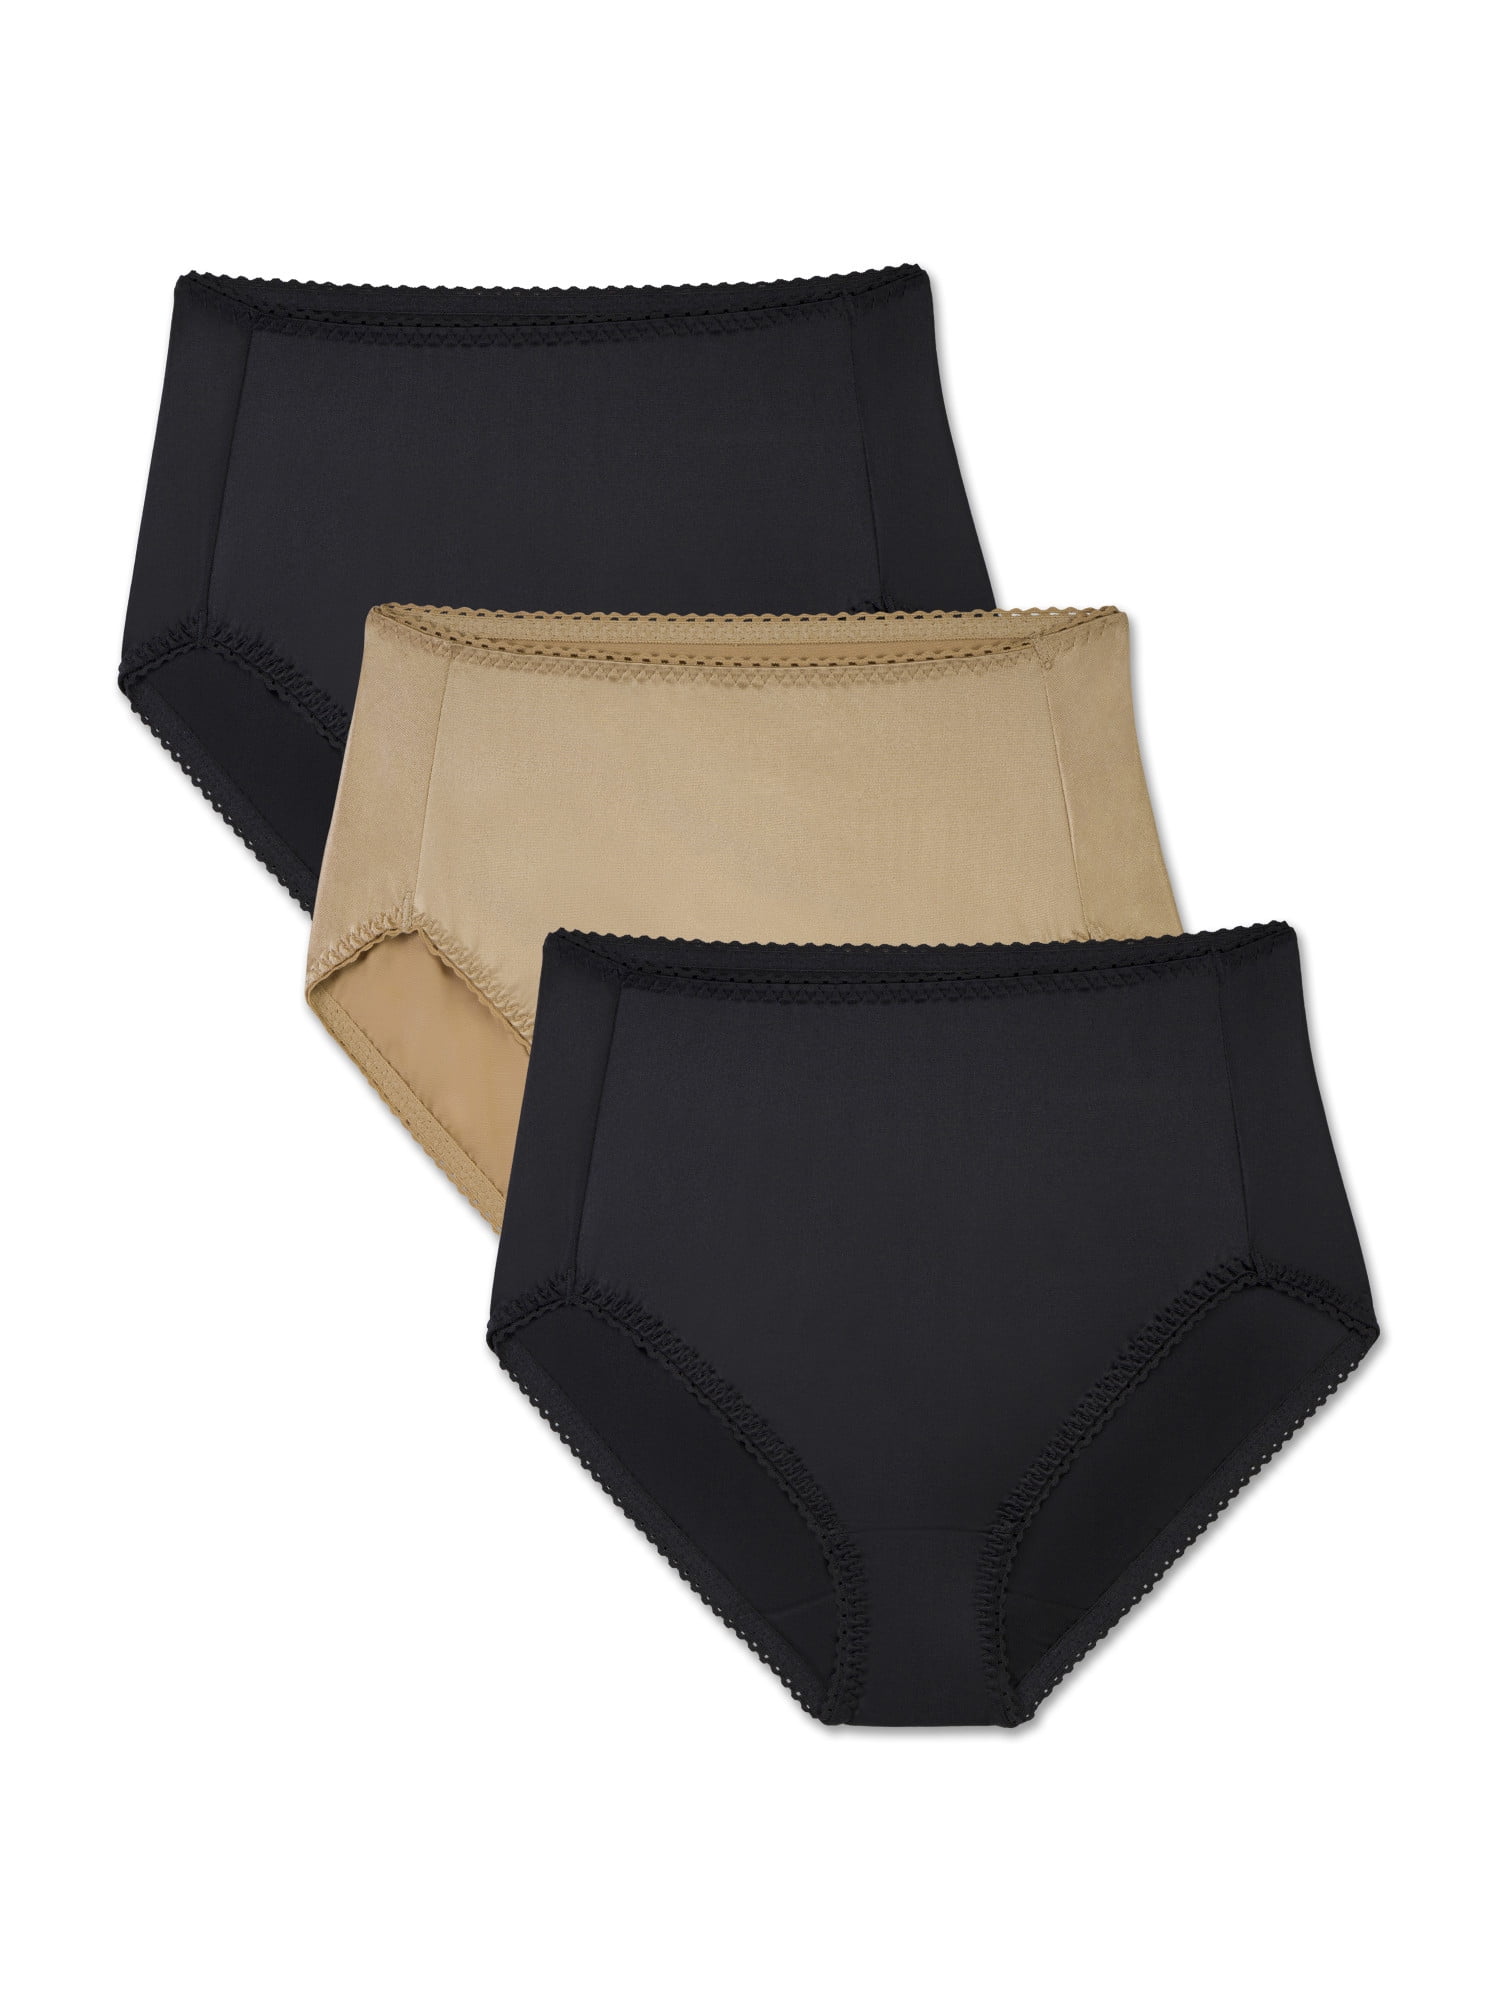 Hanes Cool Comfort Women's Cotton Hi - Cut Panties, 6 Pack - PP43WB